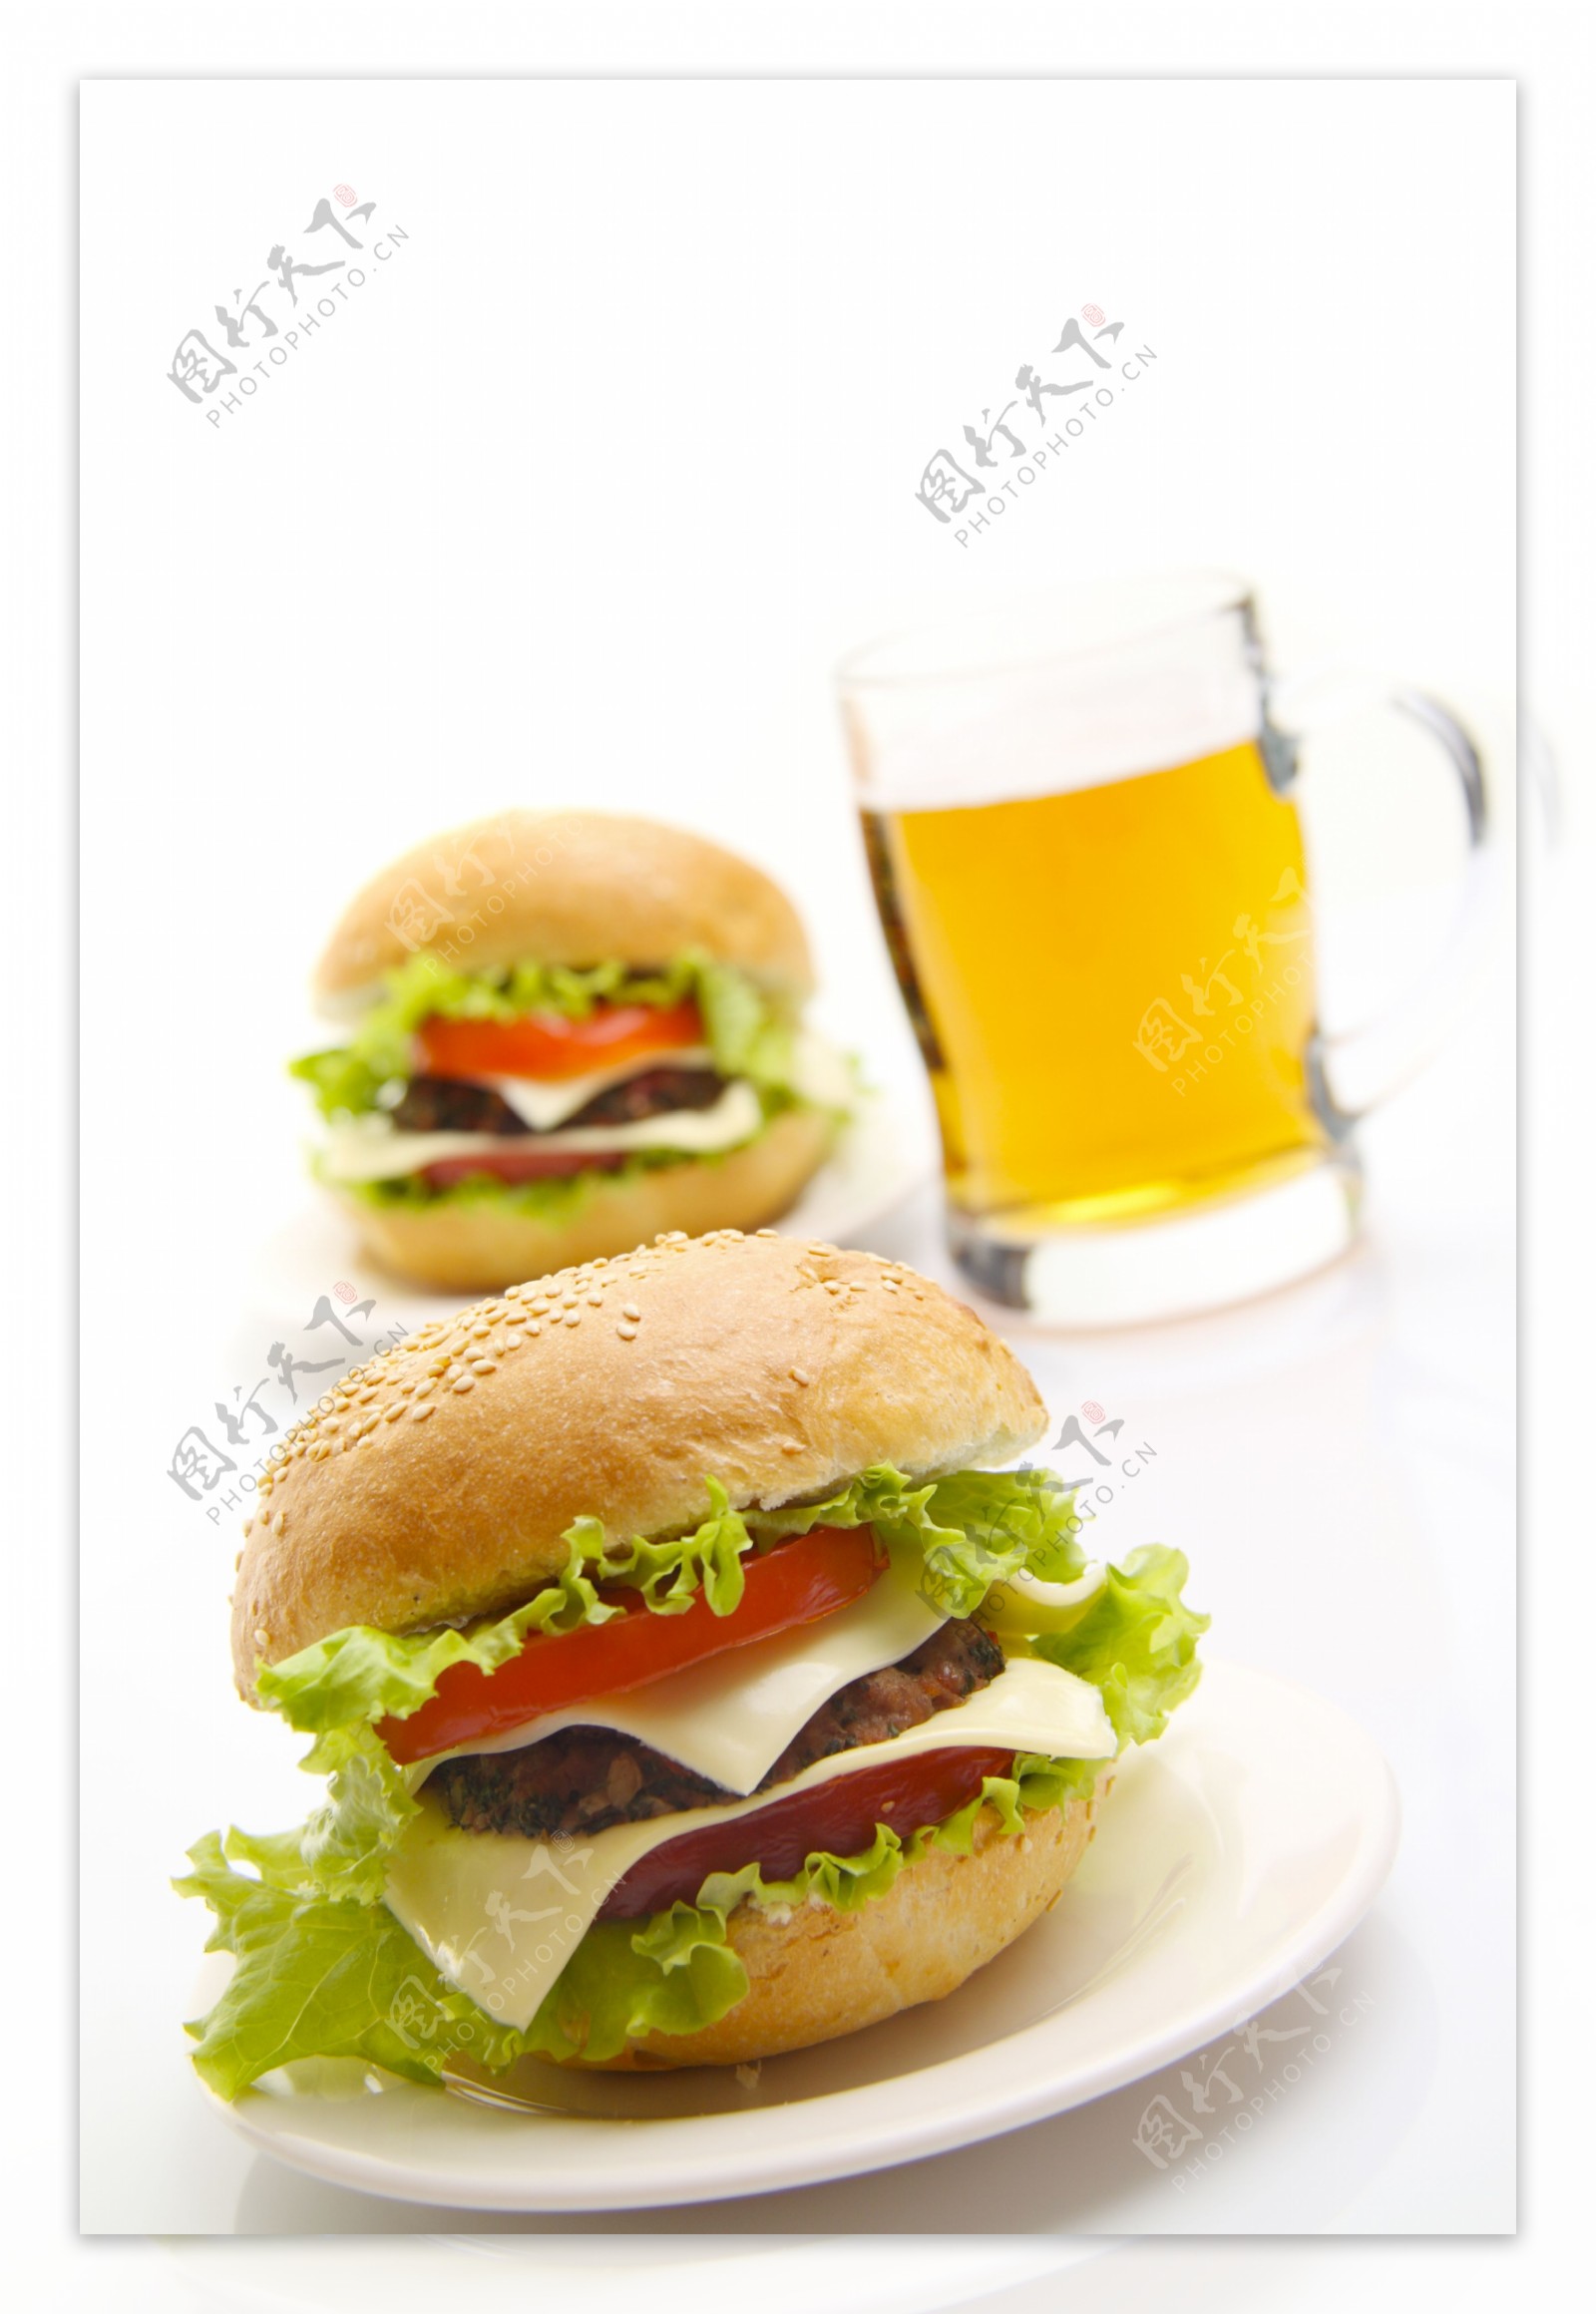 啤酒与西红柿牛肉汉堡包图片